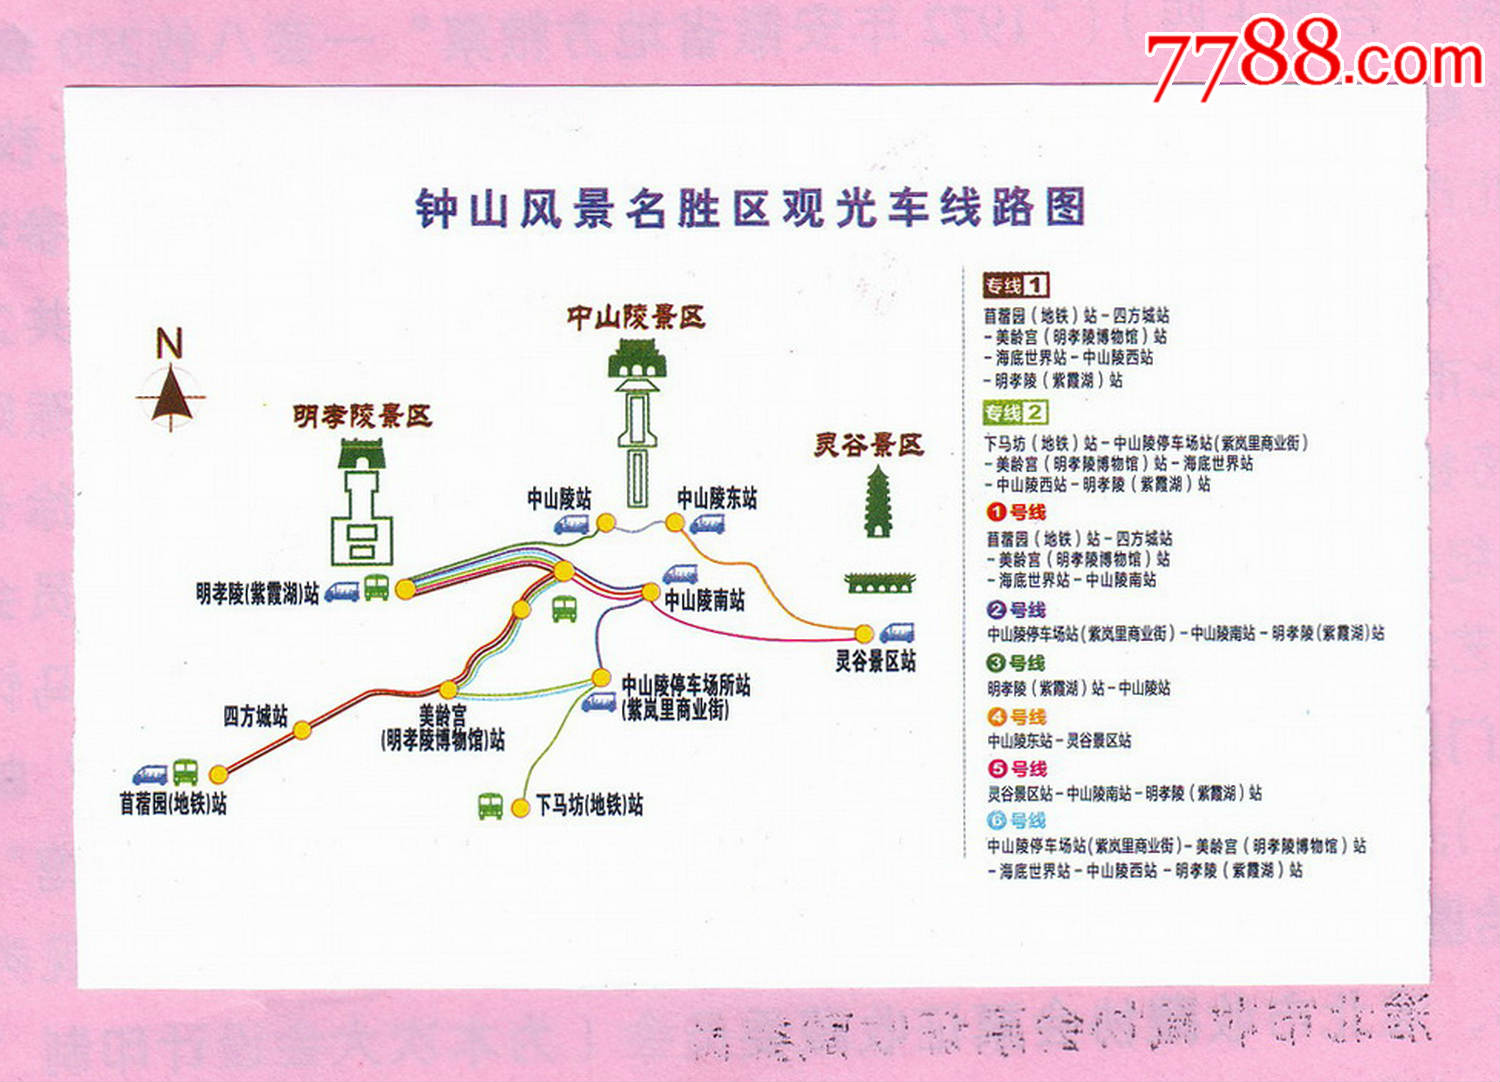 南京中山陵园风景区旅游观光车游览券,票价10元,背面是钟山风景名胜区